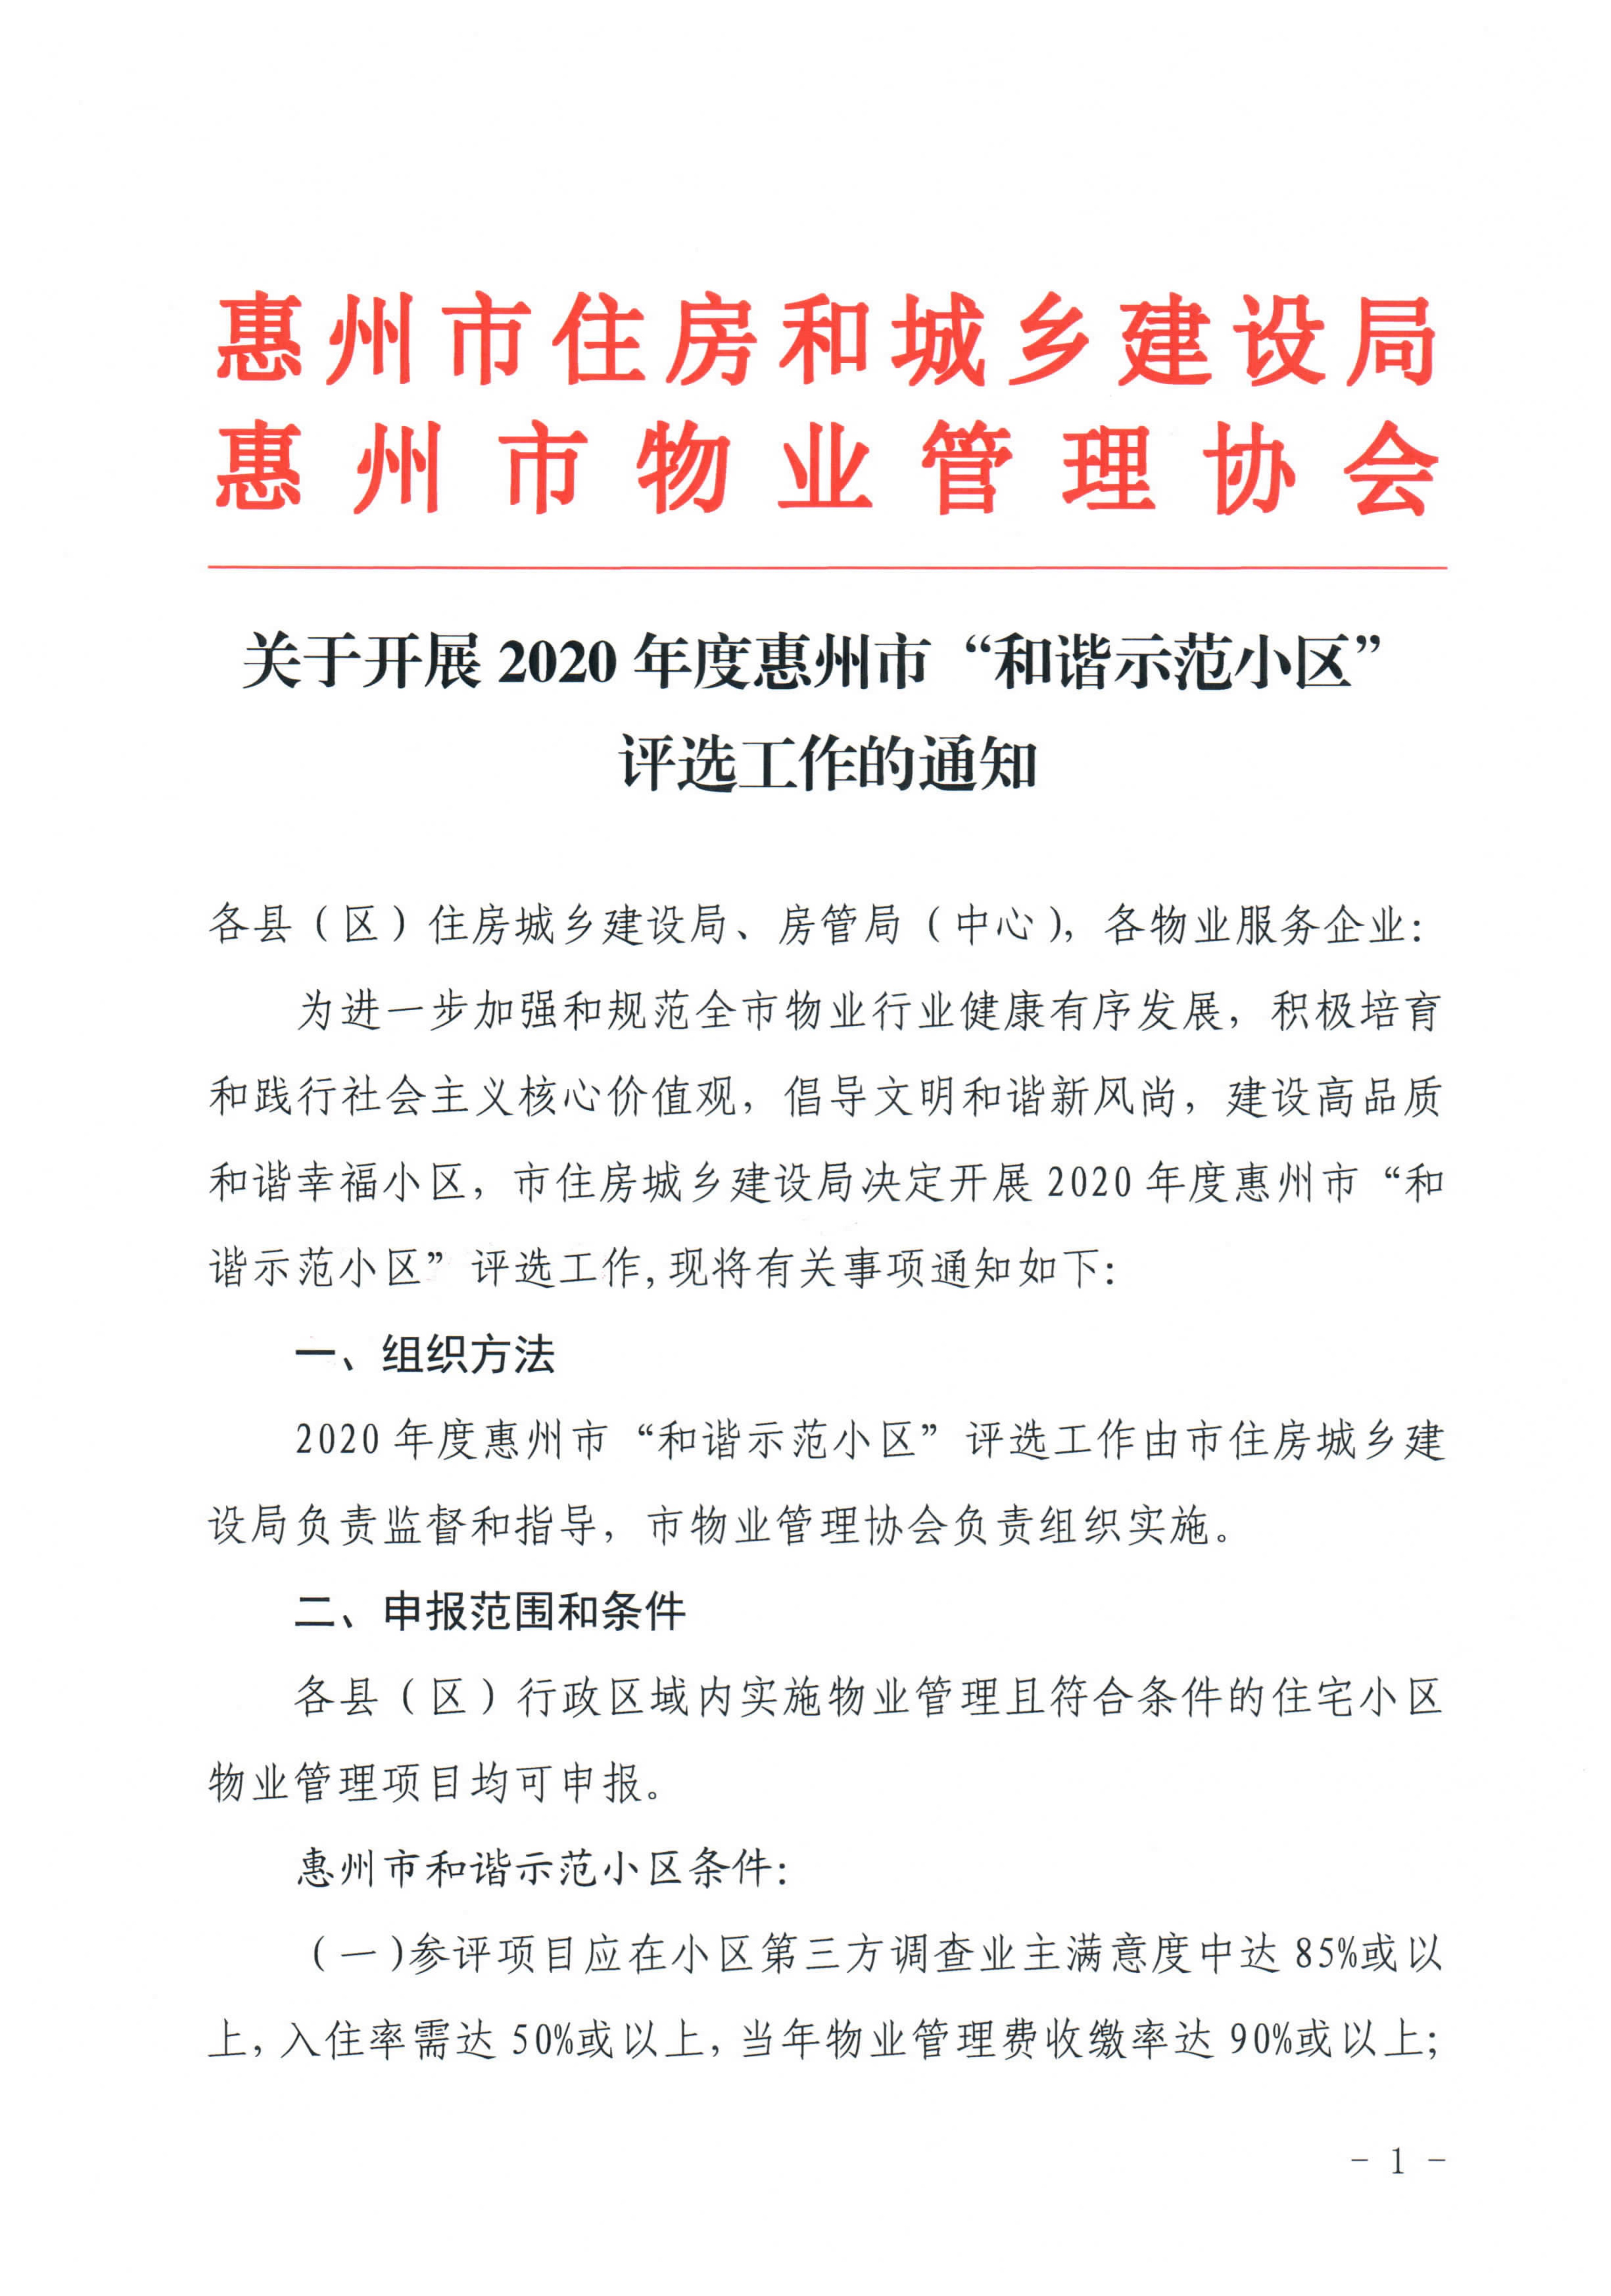 关于开展2020年度惠州市“和谐示范小区”评选工作的通知_1.jpg